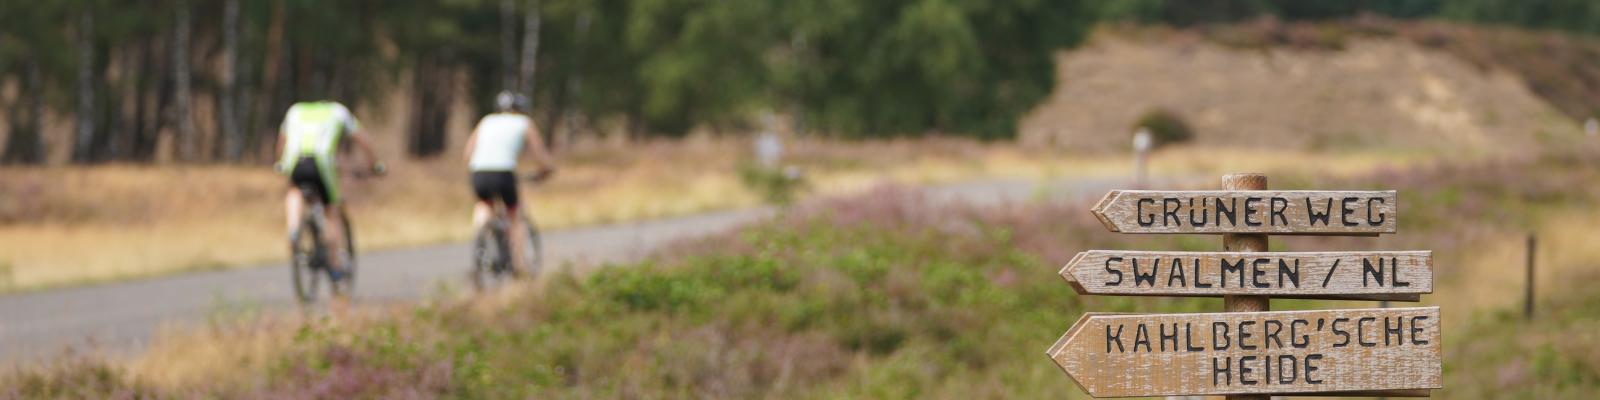 Panoramabild mit hölzernem Wegweiser Richtung Grüner Weg, Swalmen in den Niederlanden, Kahlberg´sche Heide, Brüggen und Aussichtspunkt im Vordergrund. Hinten Radeln zwei Menschen durch die Heide